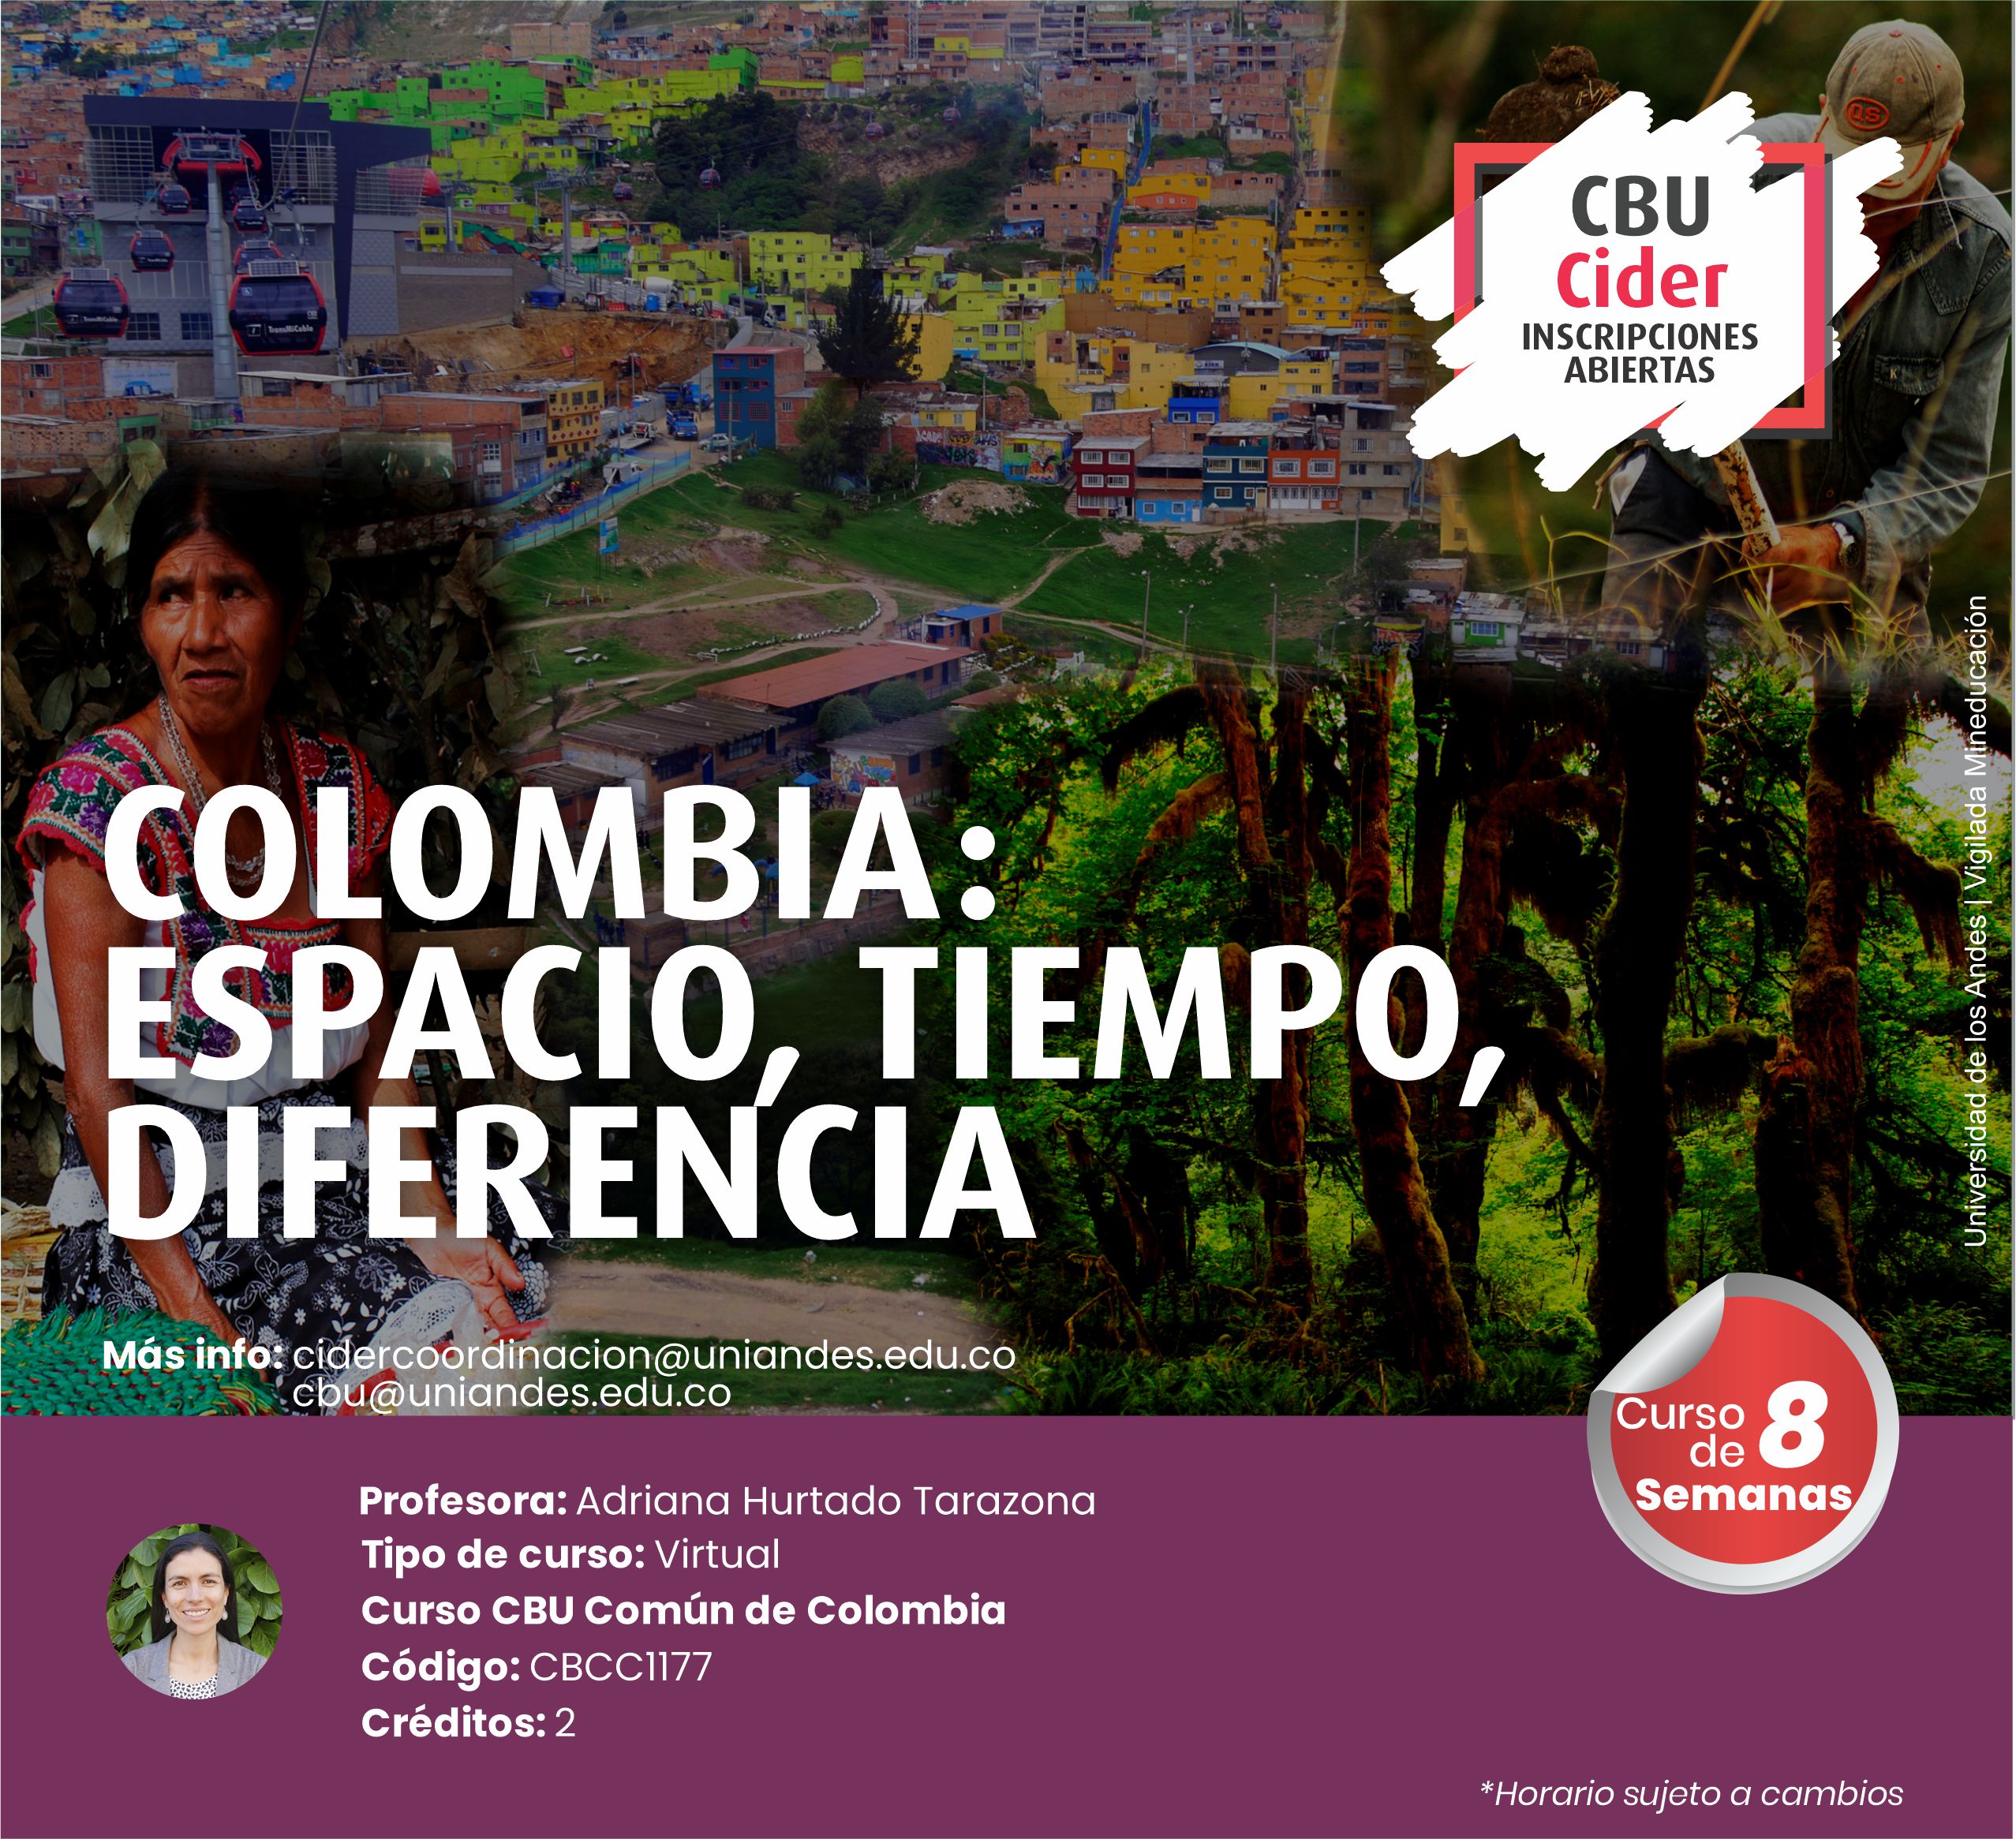 CBU: Colombia: espacio, tiempo, diferencia- Cider | Uniandes